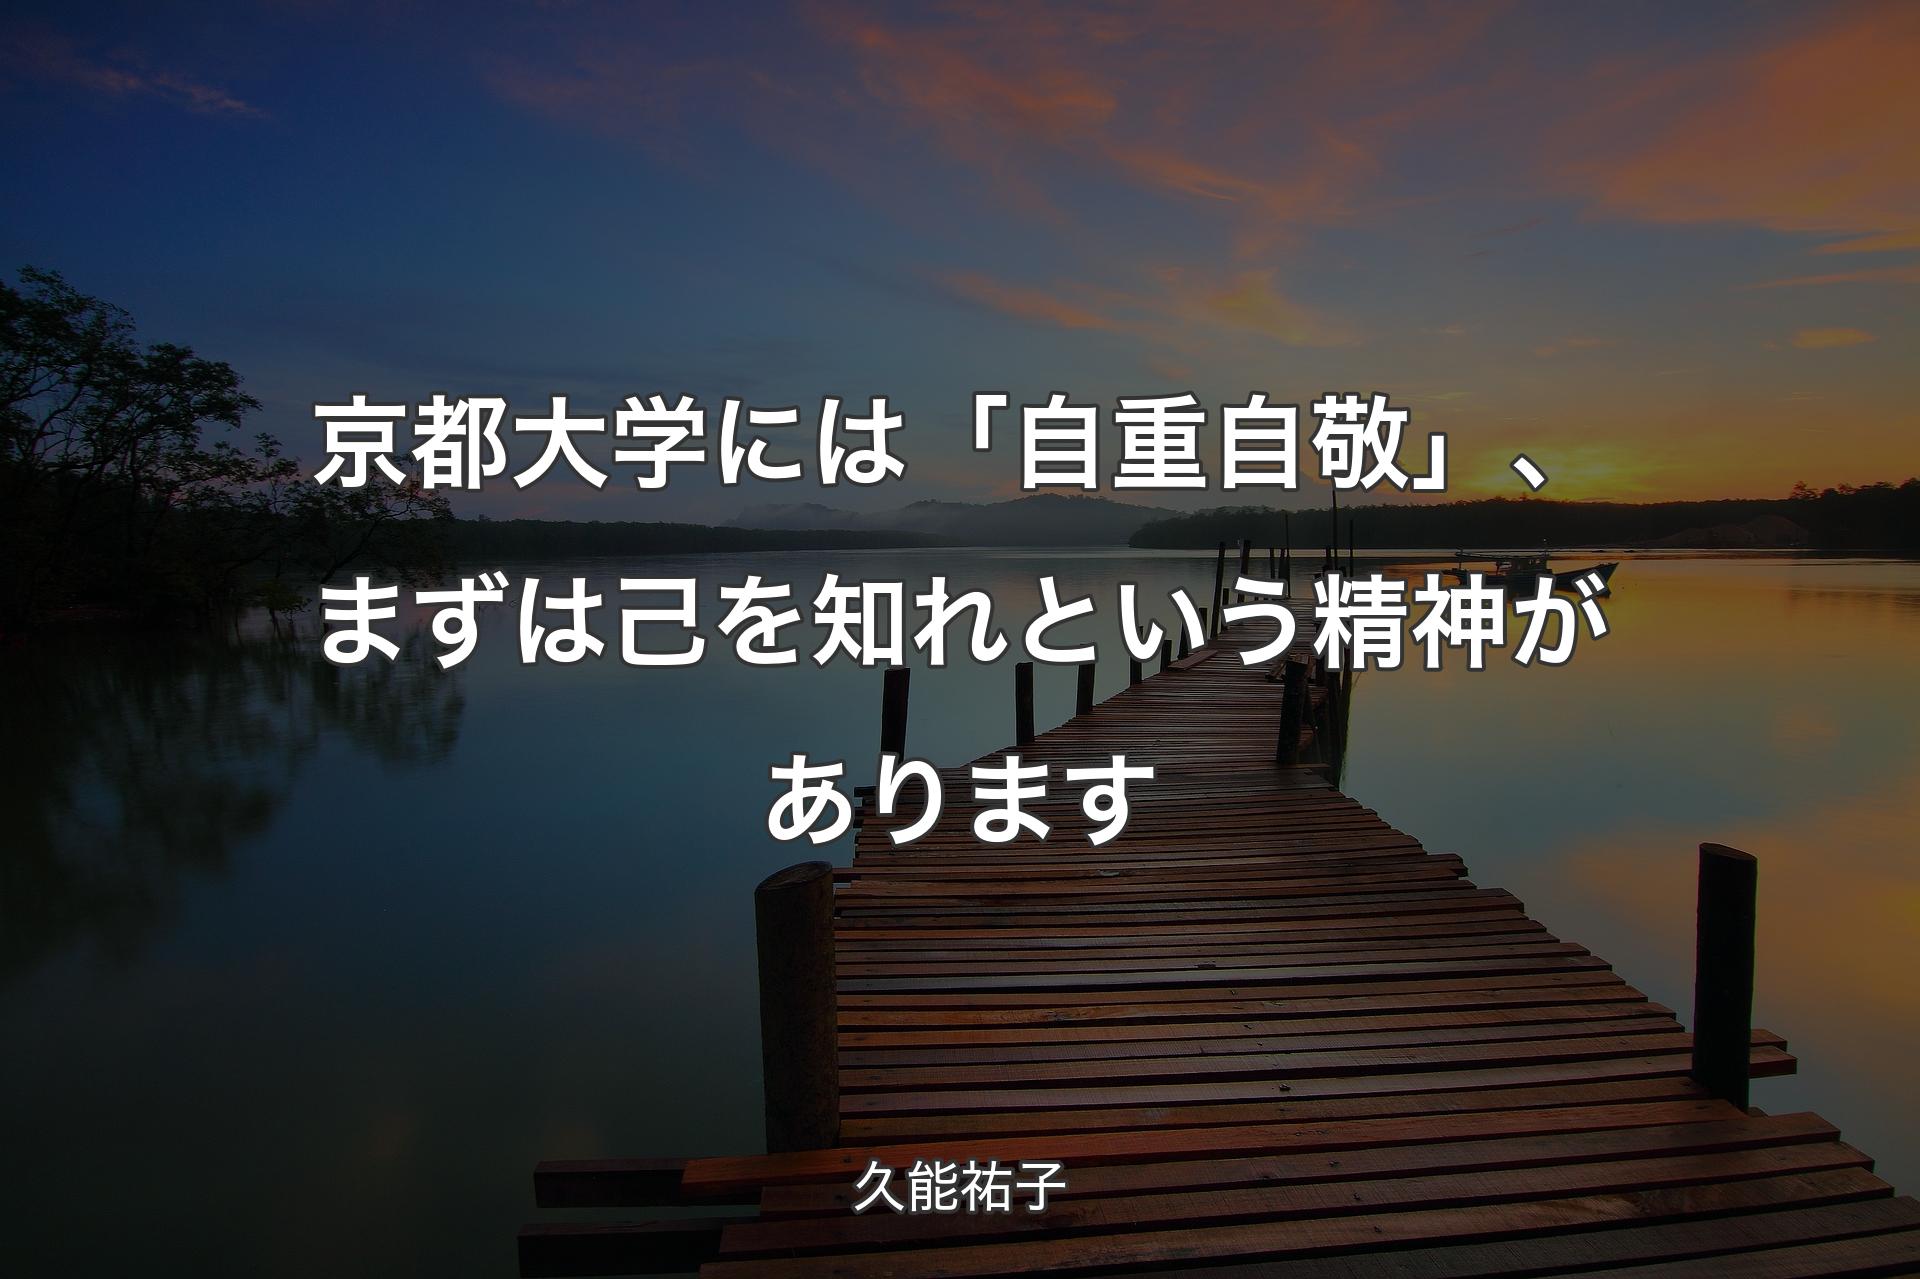 【背景3】京都大学には「自重自敬」、まずは己を知れという精神があります - 久能祐子